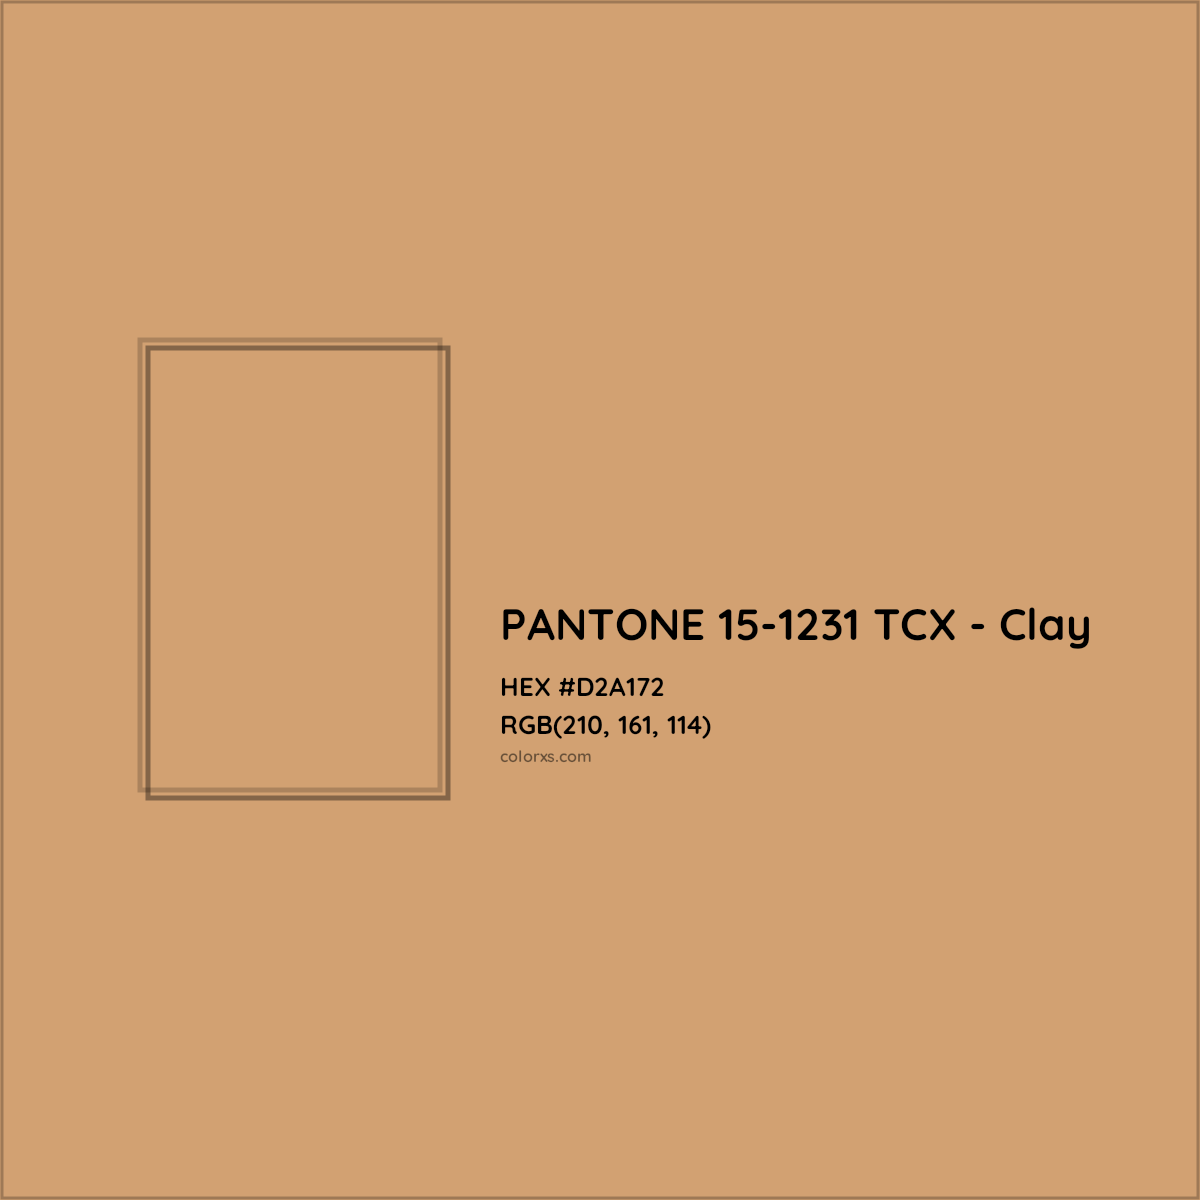 HEX #D2A172 PANTONE 15-1231 TCX - Clay CMS Pantone TCX - Color Code